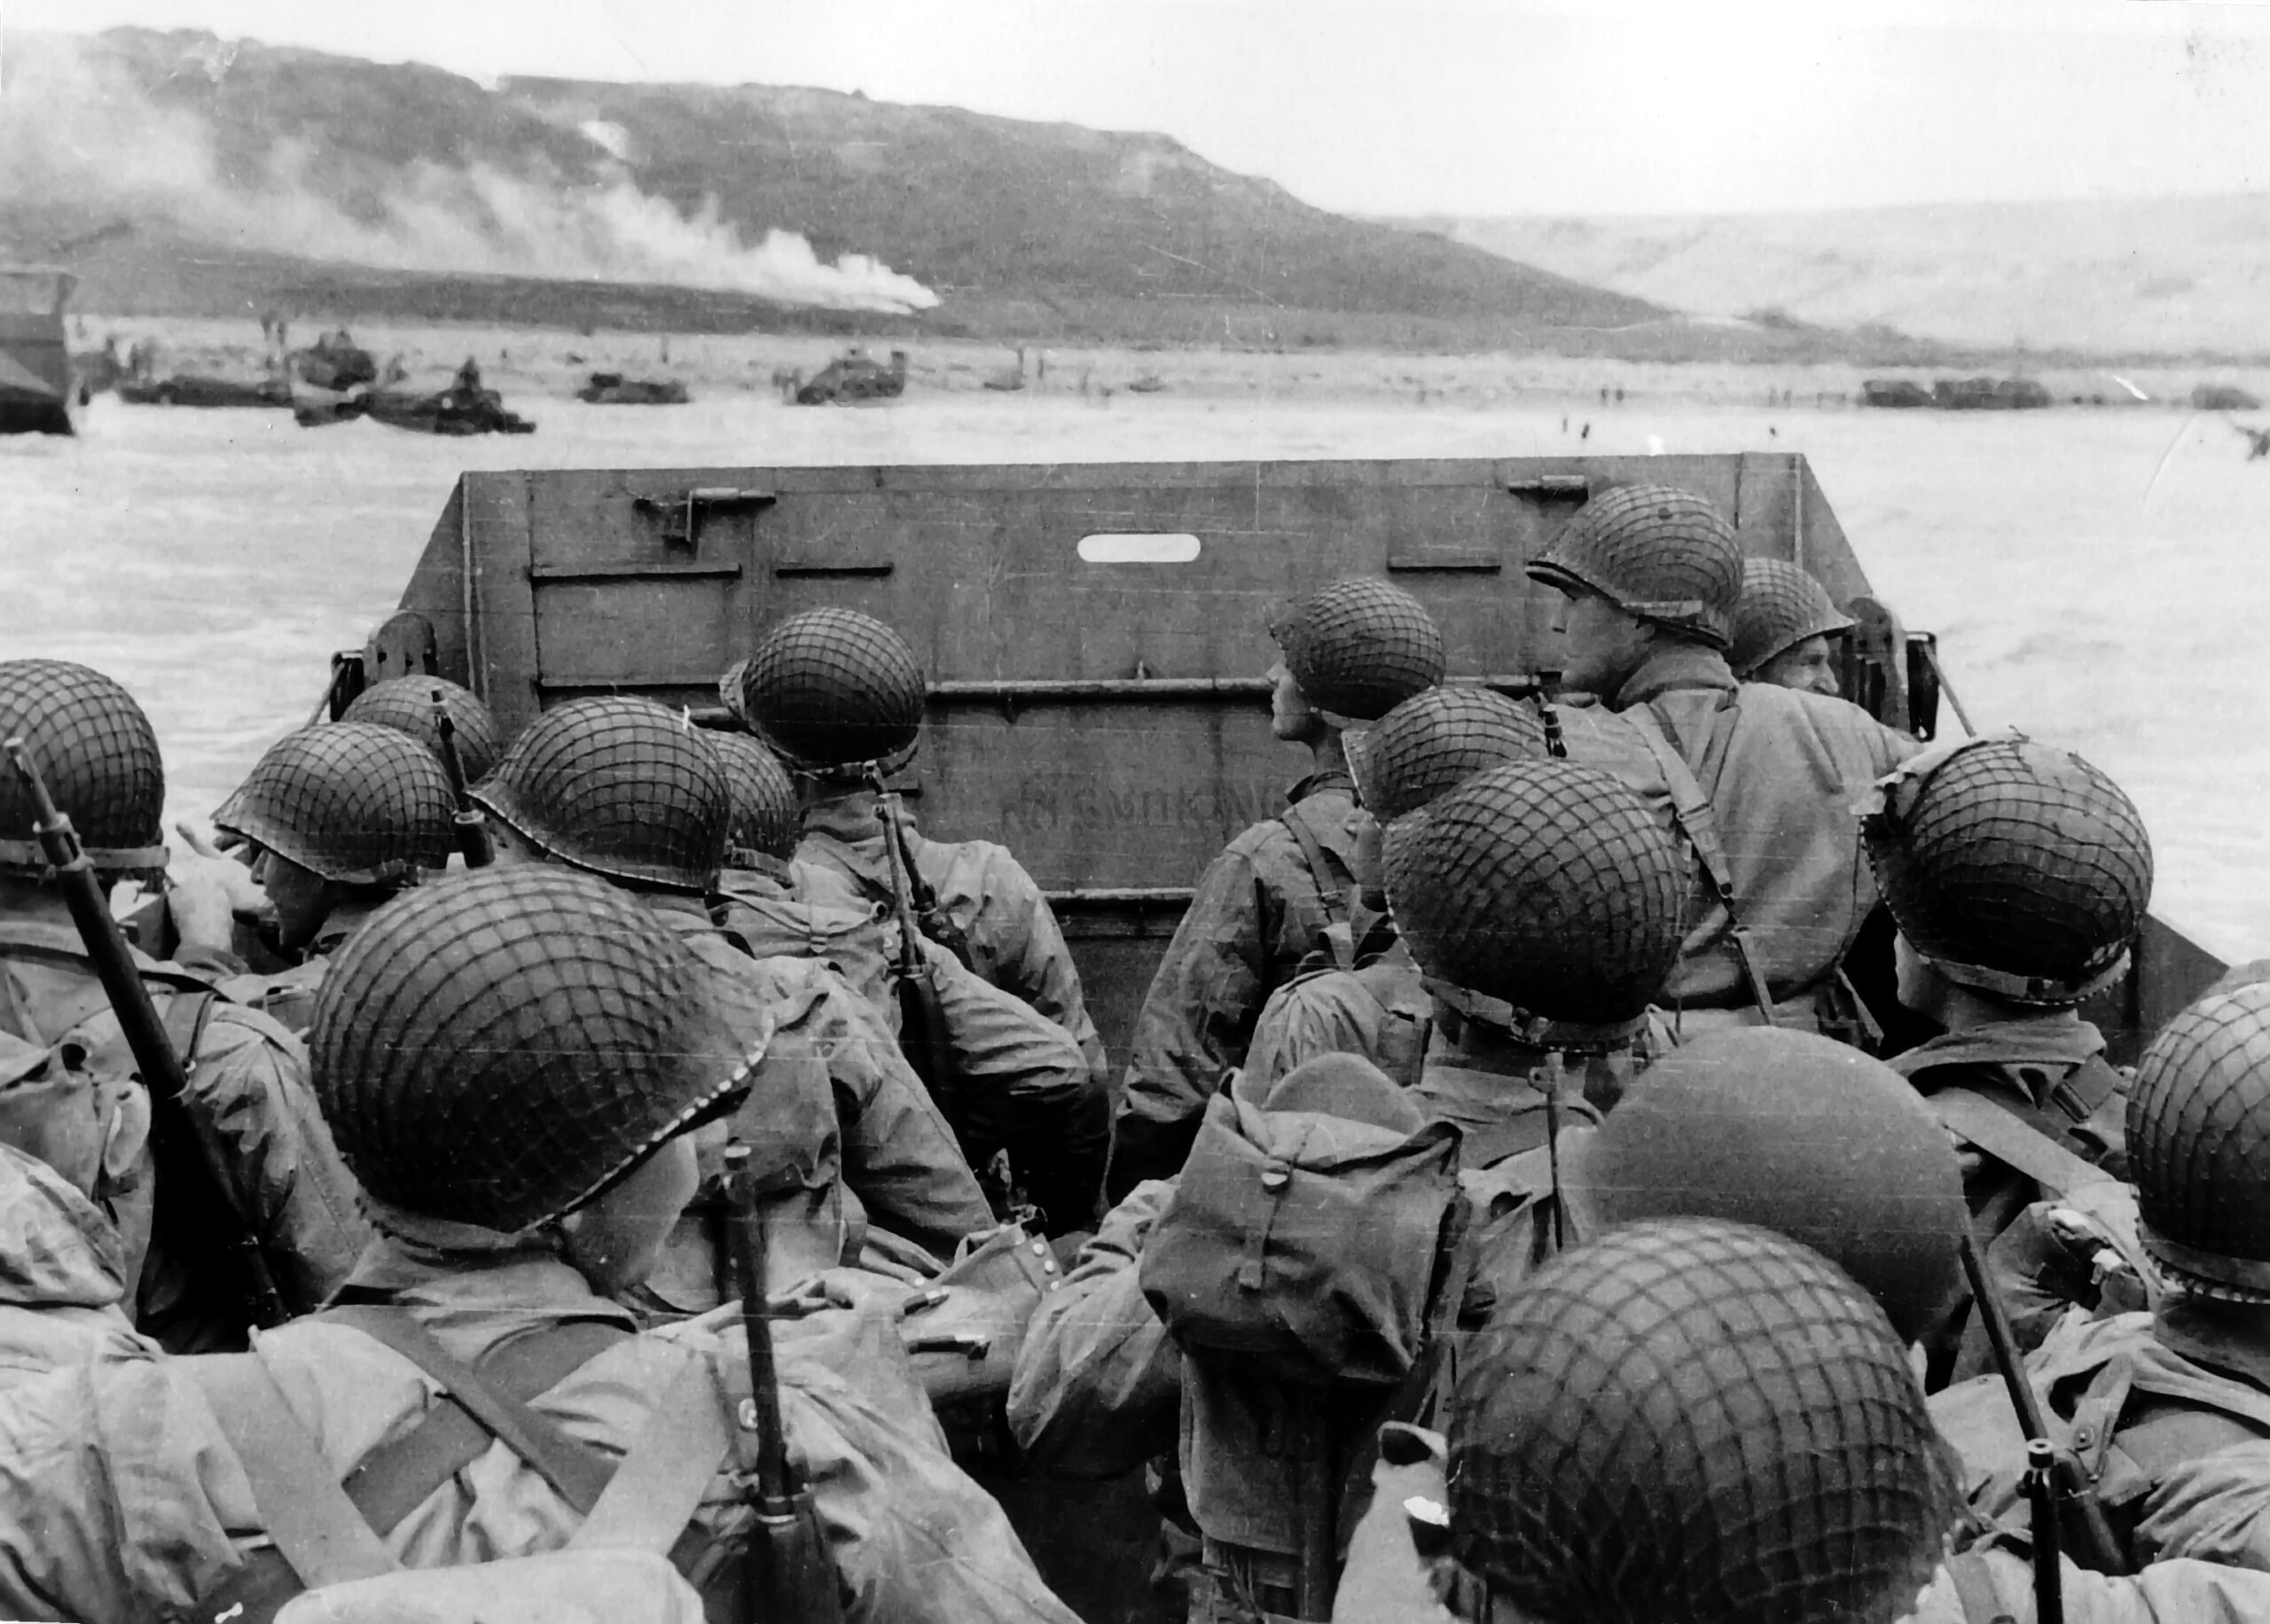 U.S. troops landing at Normandy